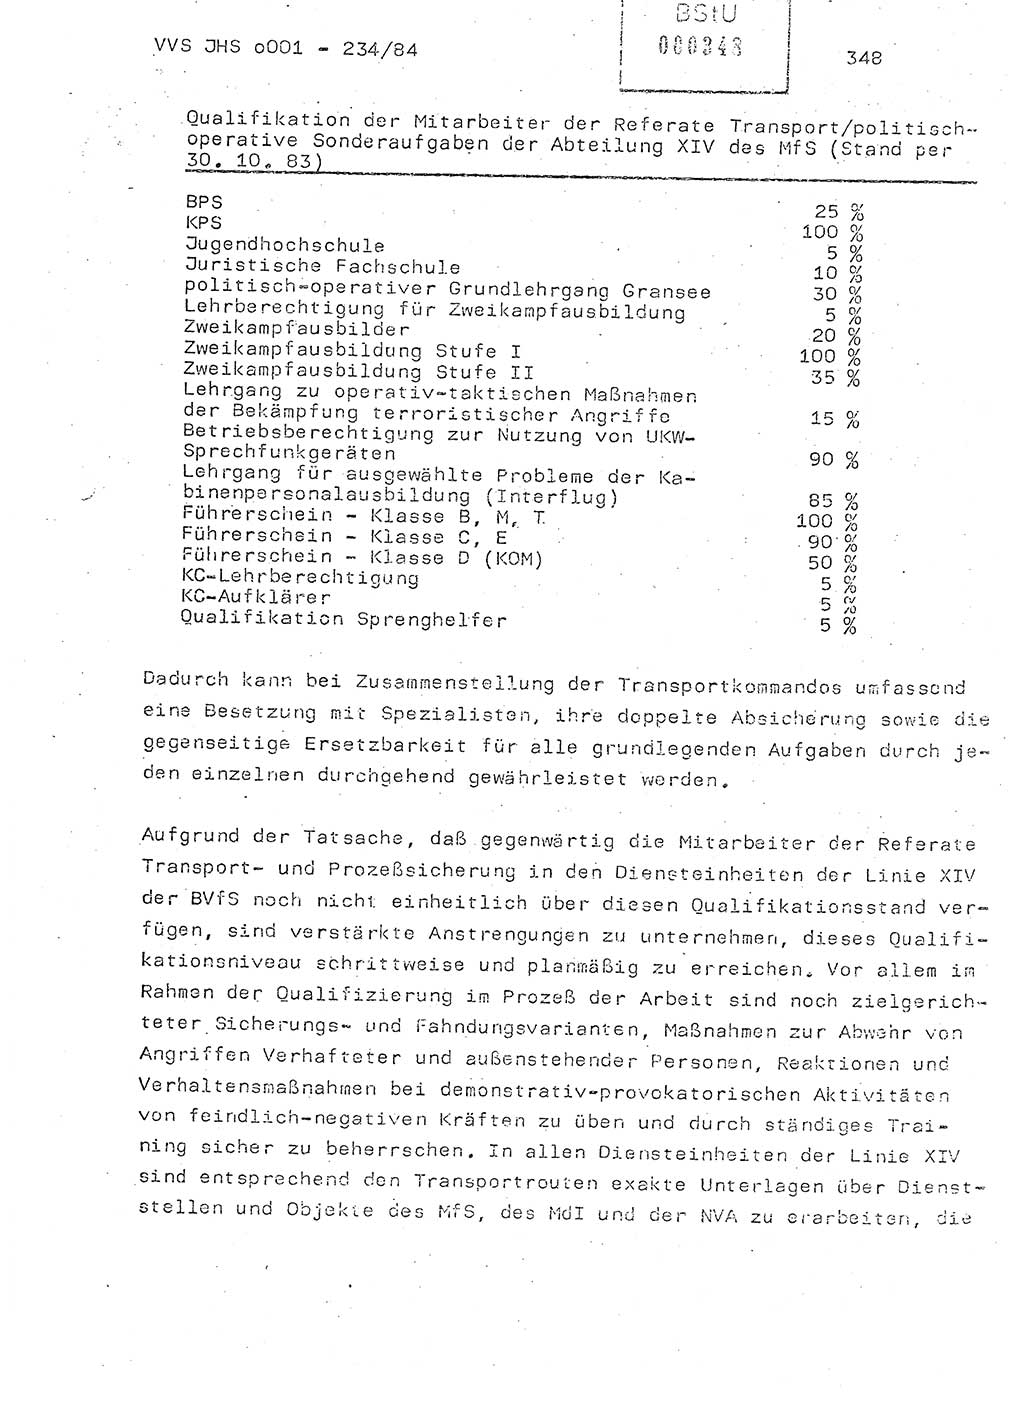 Dissertation Oberst Siegfried Rataizick (Abt. ⅩⅣ), Oberstleutnant Volkmar Heinz (Abt. ⅩⅣ), Oberstleutnant Werner Stein (HA Ⅸ), Hauptmann Heinz Conrad (JHS), Ministerium für Staatssicherheit (MfS) [Deutsche Demokratische Republik (DDR)], Juristische Hochschule (JHS), Vertrauliche Verschlußsache (VVS) o001-234/84, Potsdam 1984, Seite 348 (Diss. MfS DDR JHS VVS o001-234/84 1984, S. 348)